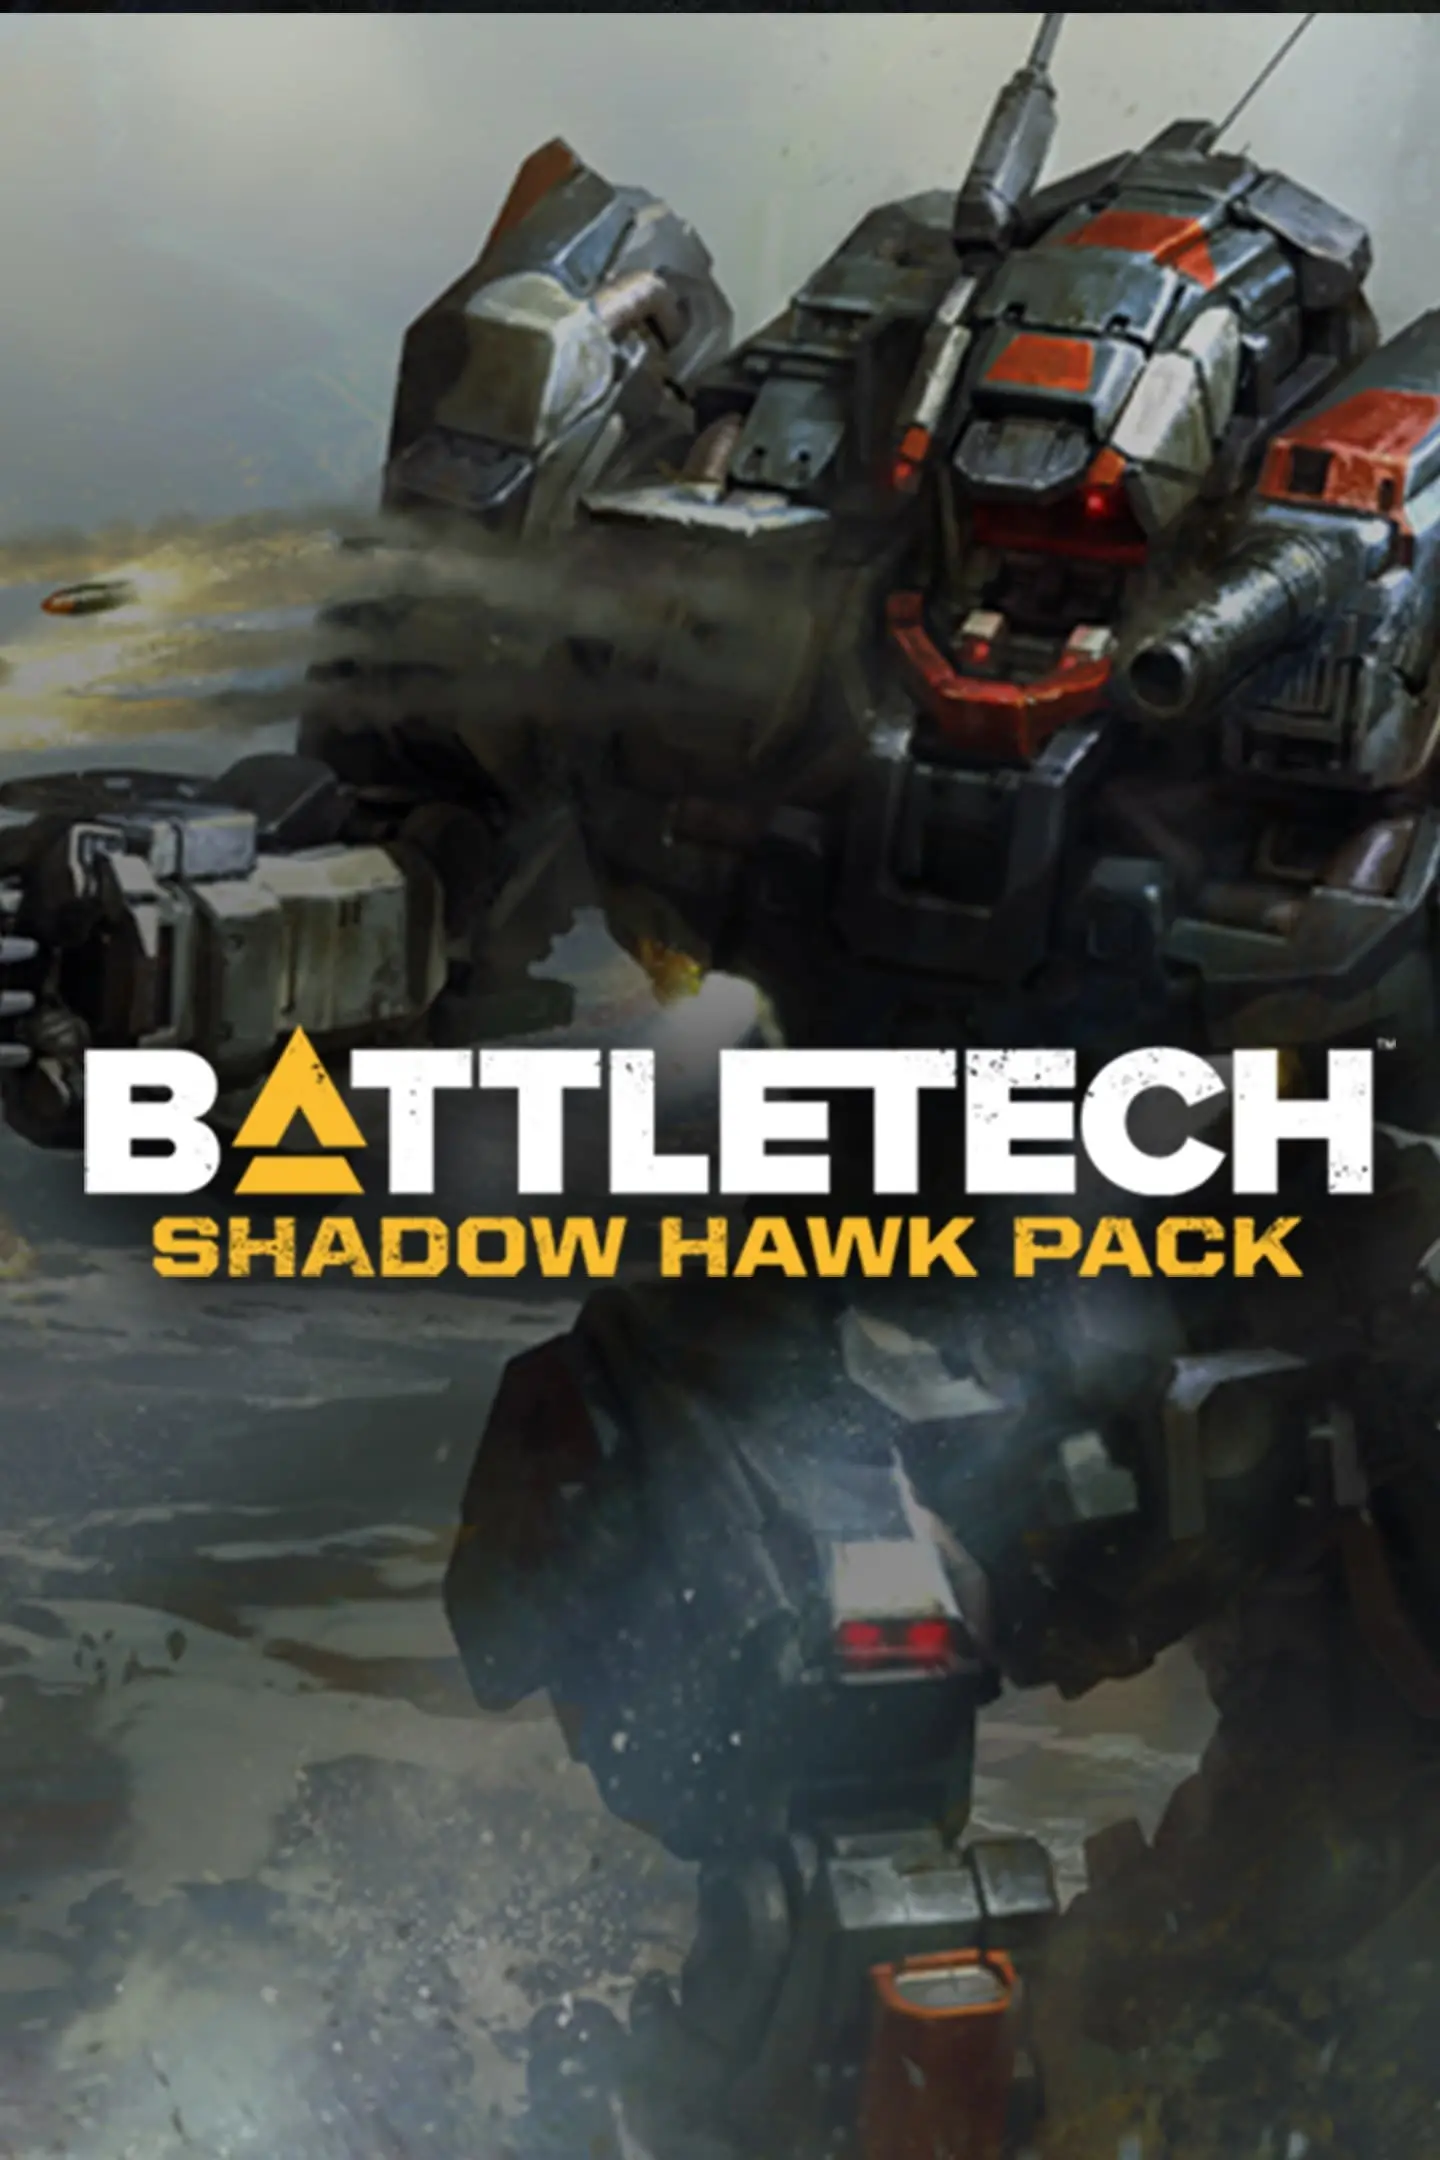 BATTLETECH - Shadow Hawk Pack DLC (PC / Mac / Linux) - Steam - Digital Code